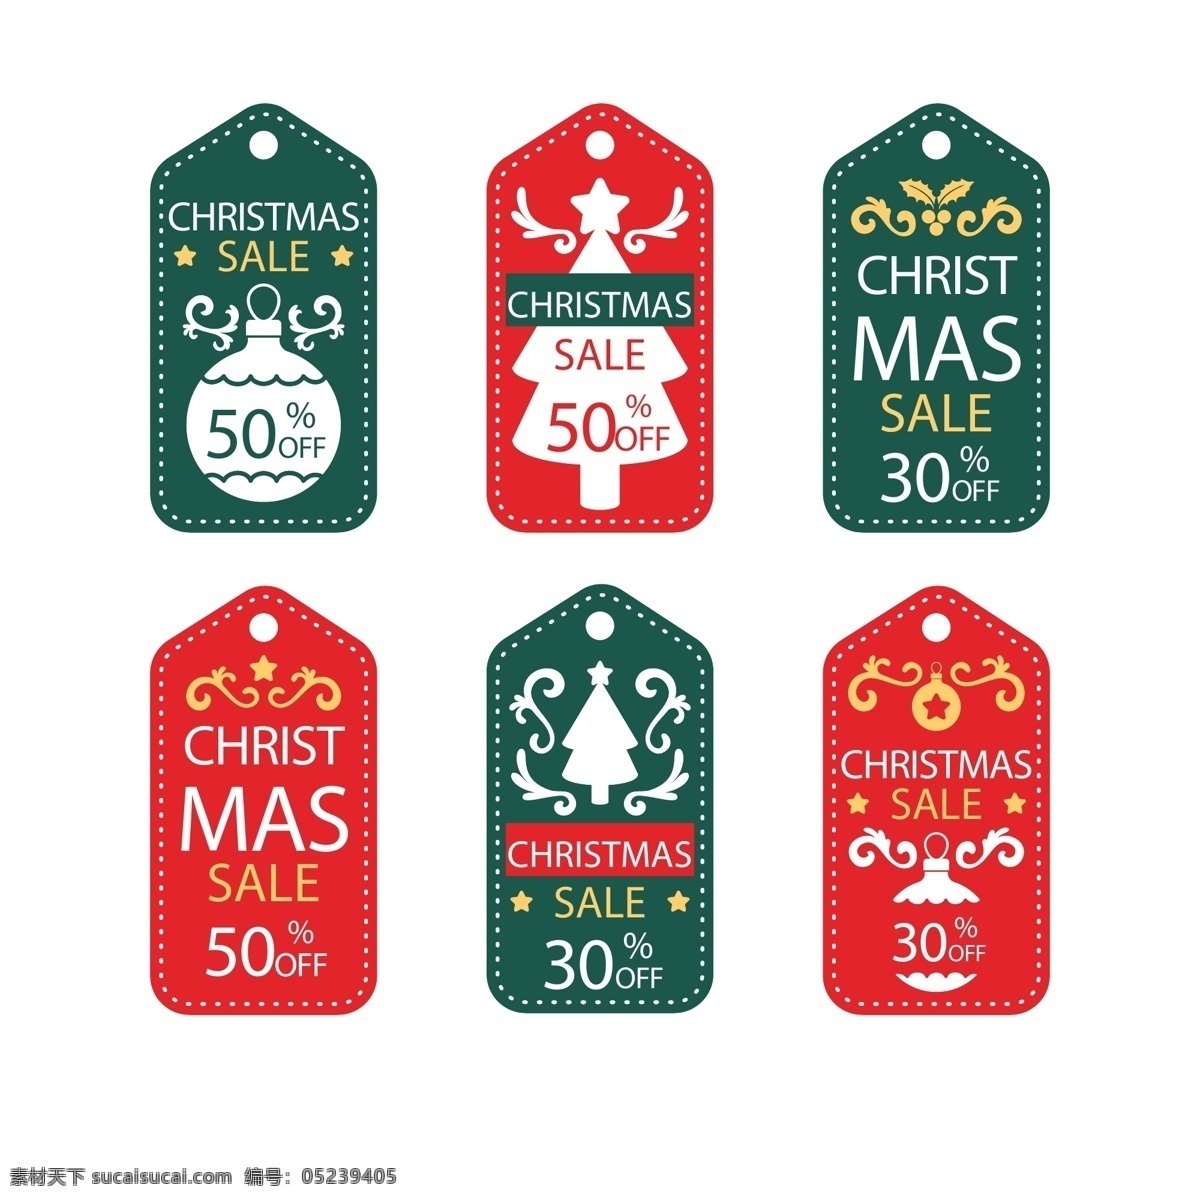 两 种 颜色 圣诞 标签 绿色 促销 圣诞节 矢量素材 红色 圣诞树 英文 优惠